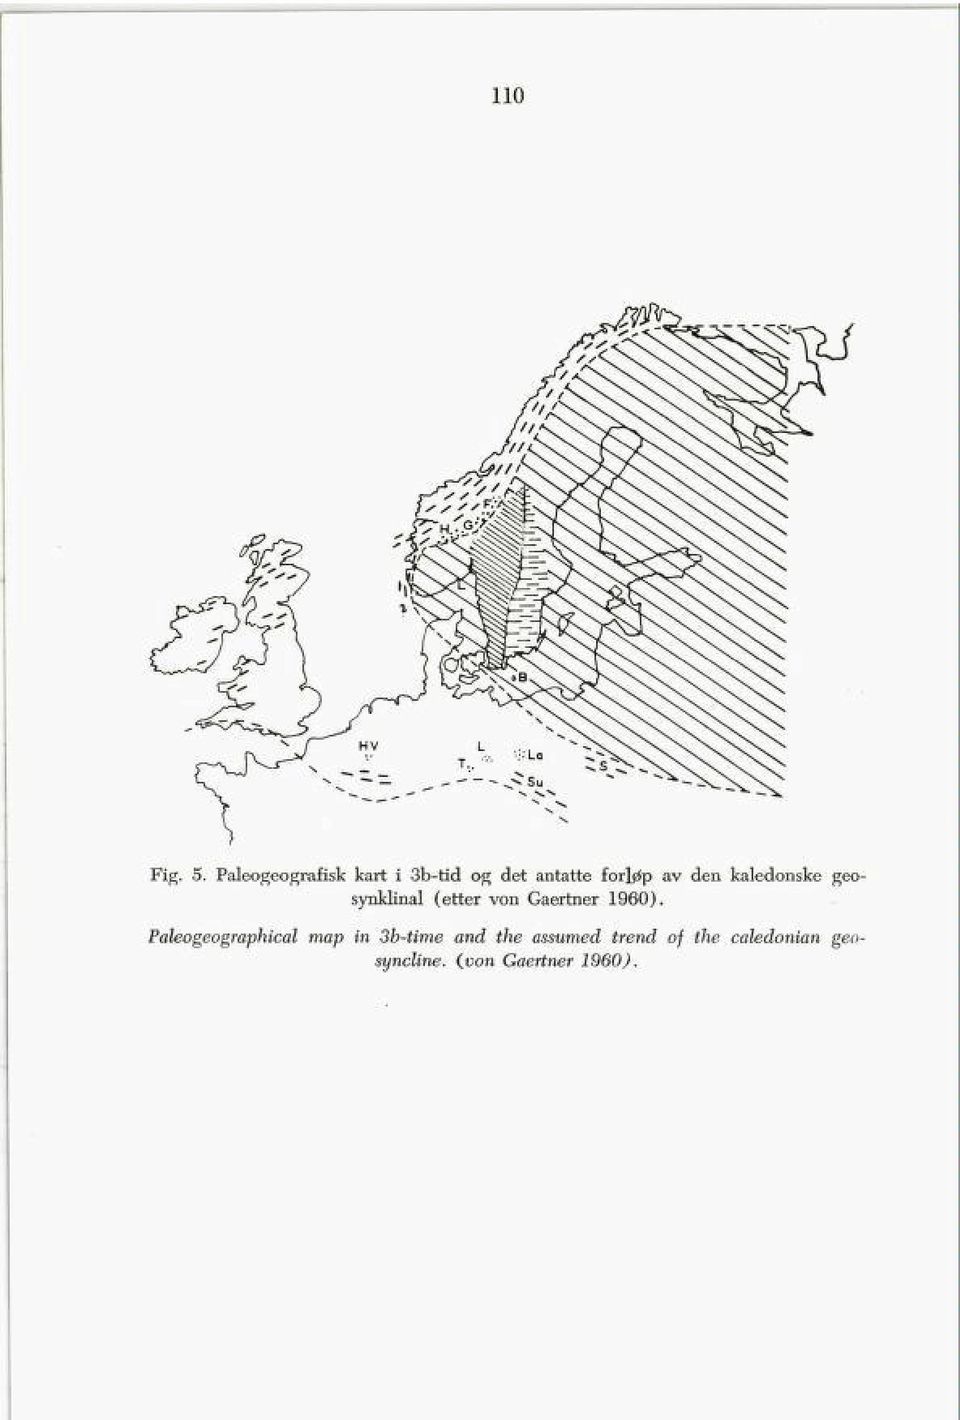 den kaledonske geo synklinal (etter von Gaertner 1960).